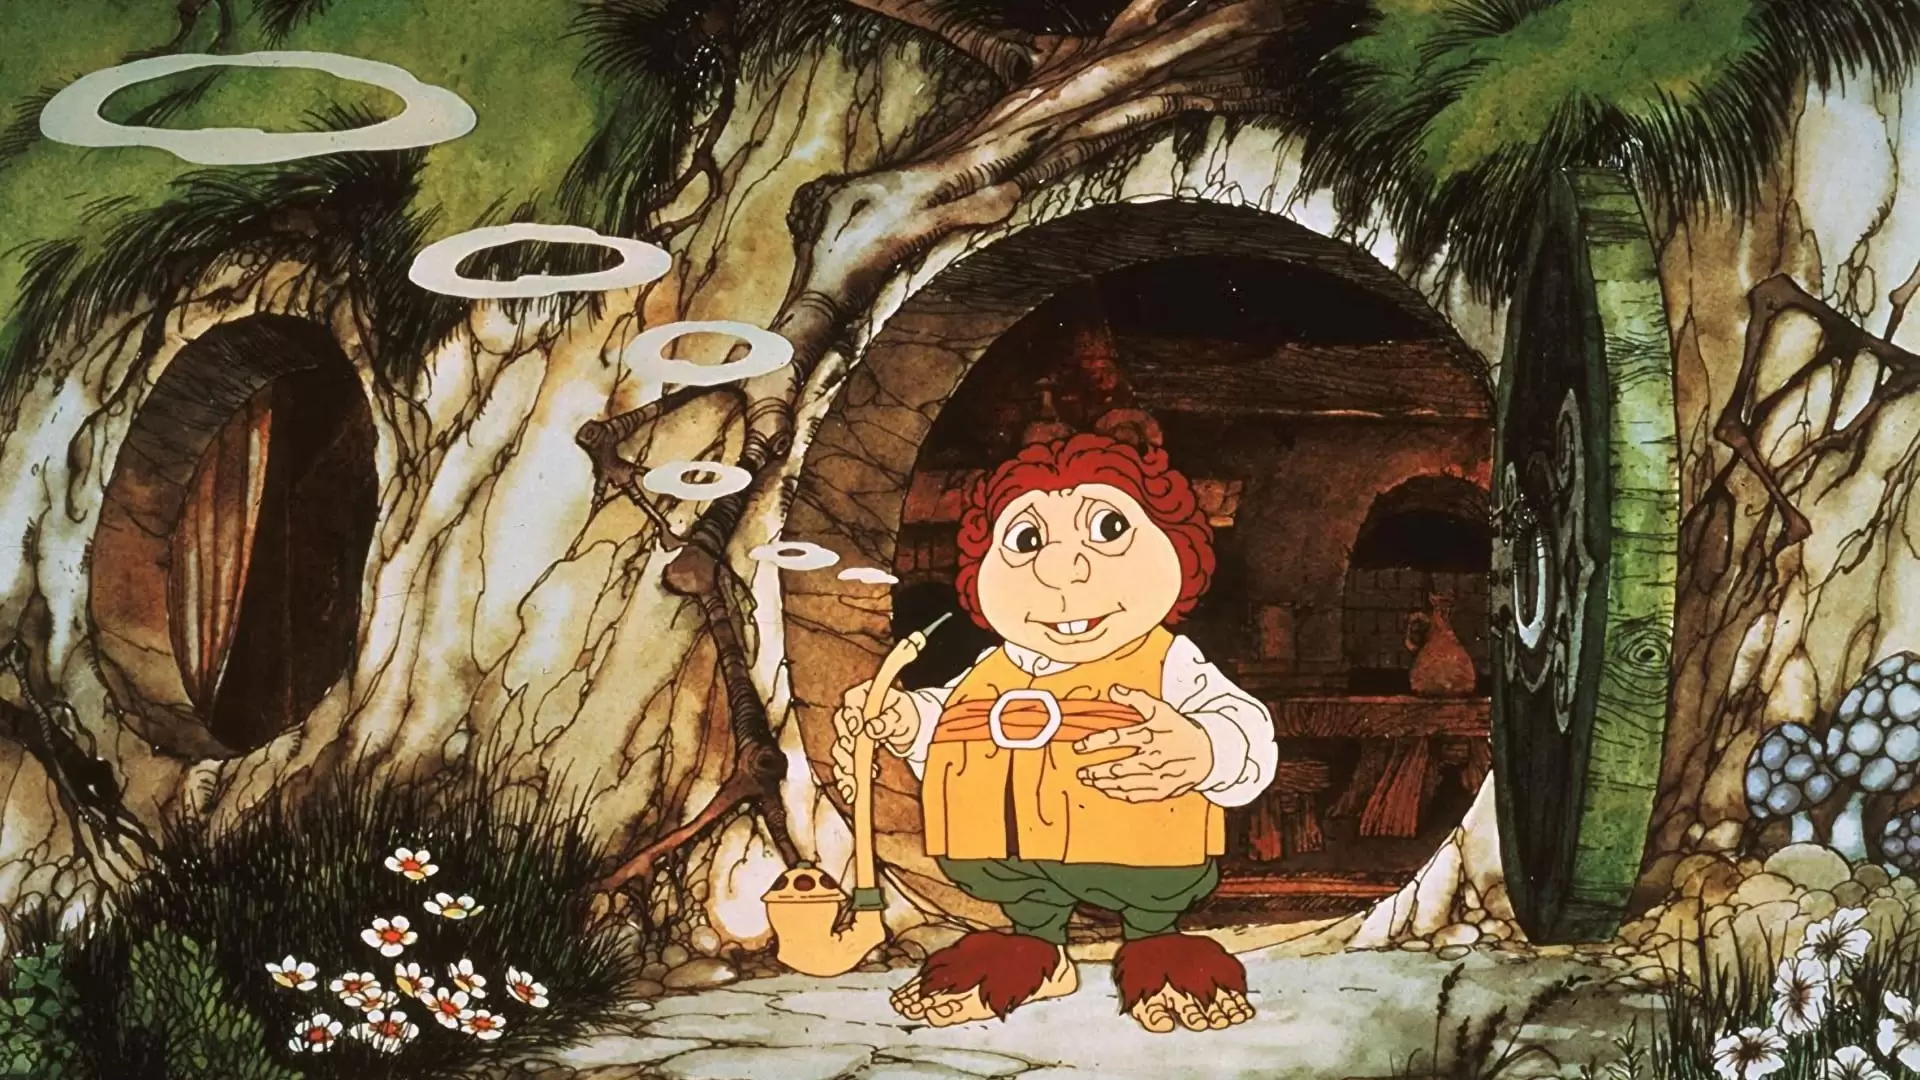 دانلود انیمیشن The Hobbit 1977 با زیرنویس فارسی